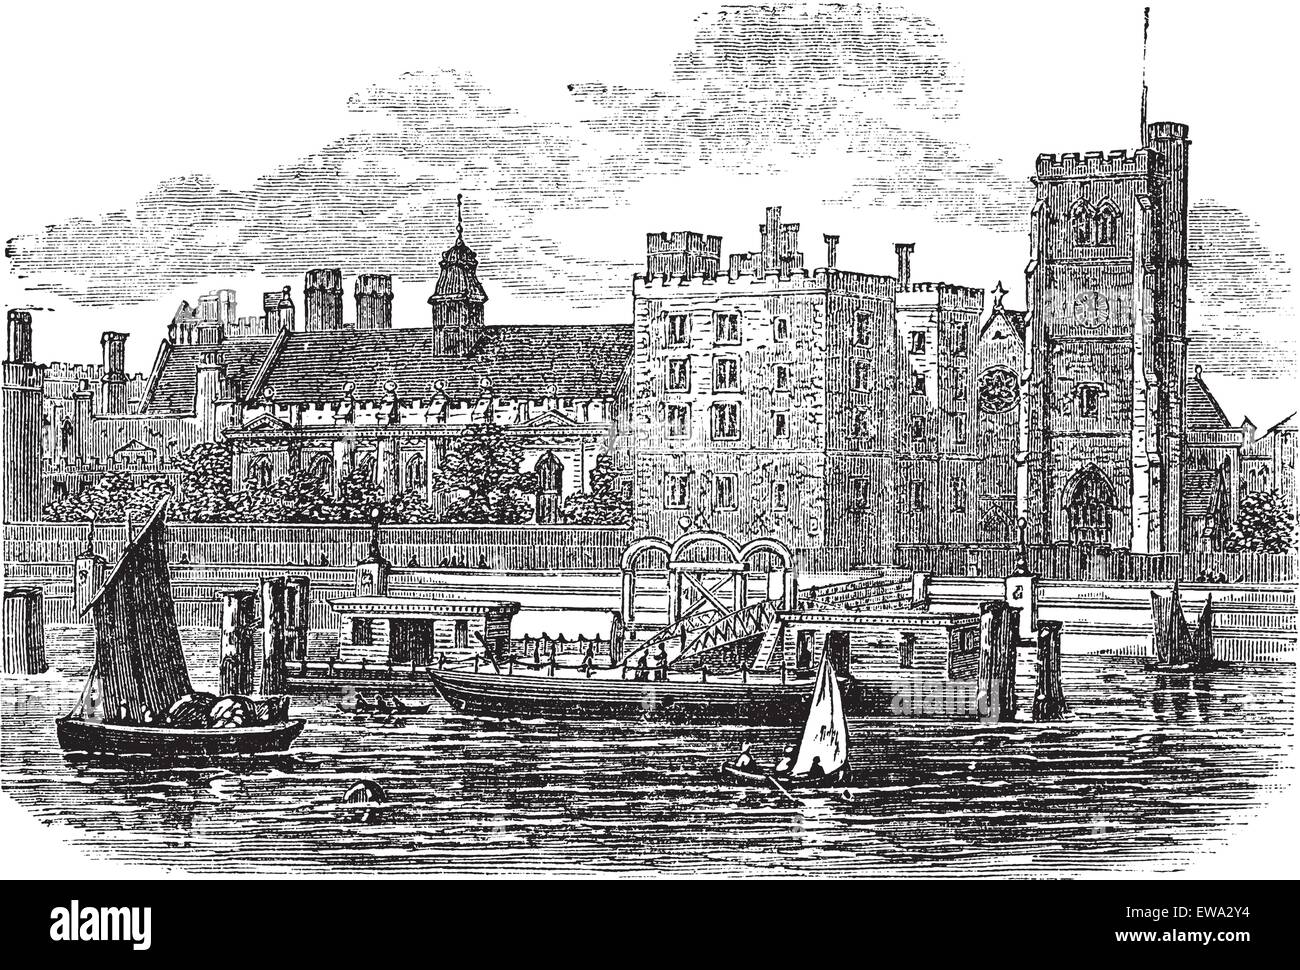 Lambeth Palace di Londra vintage incisione. Vecchie illustrazioni incise della famosa Lambeth Palace a Londra, 1800s. Illustrazione Vettoriale